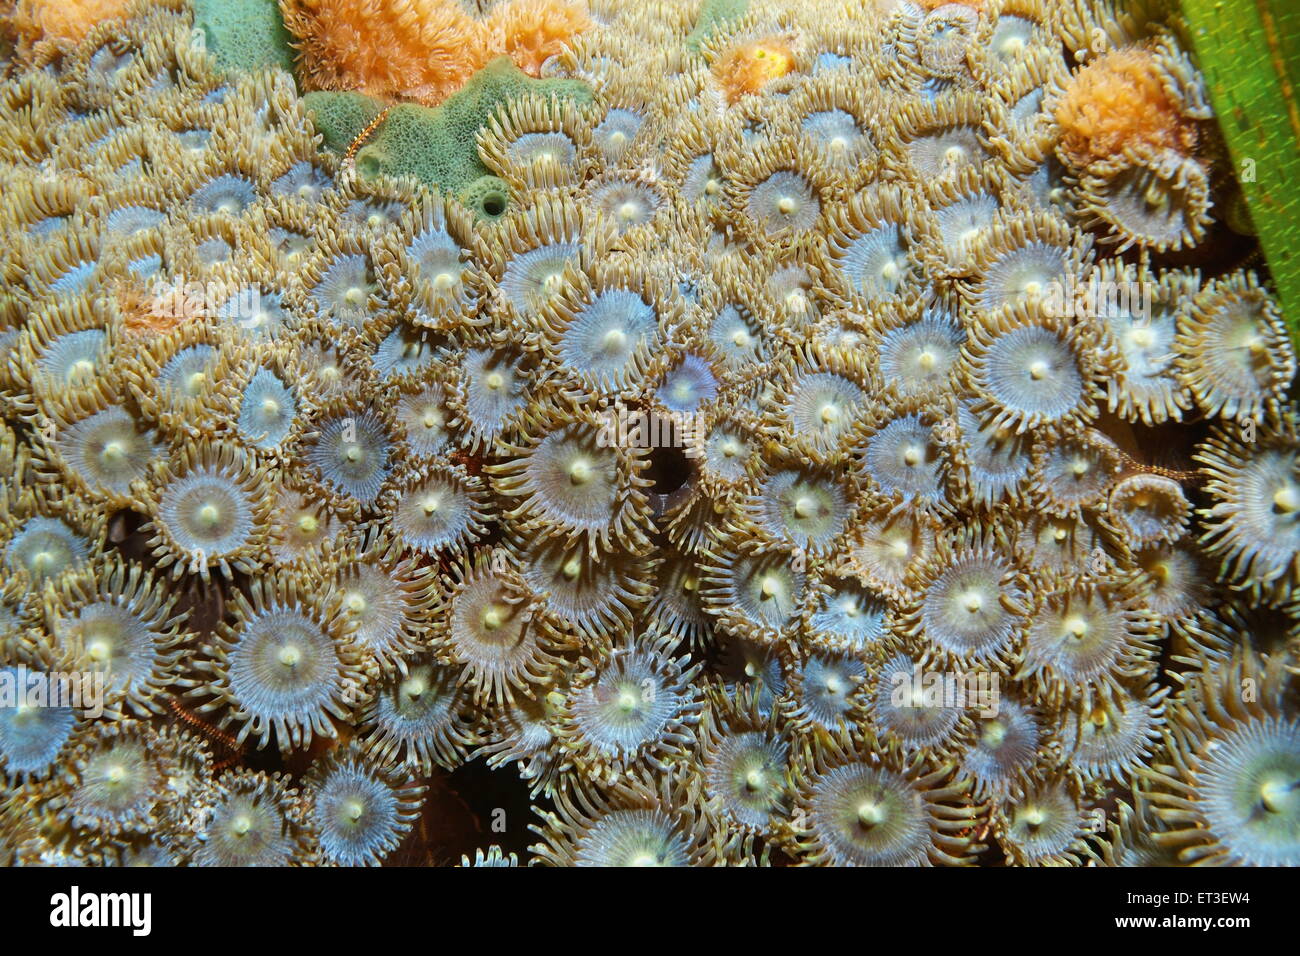 La vie marine sous-marine, colonie de Zoanthus pulchellus zoanthid, Mat, mer des Caraïbes Banque D'Images